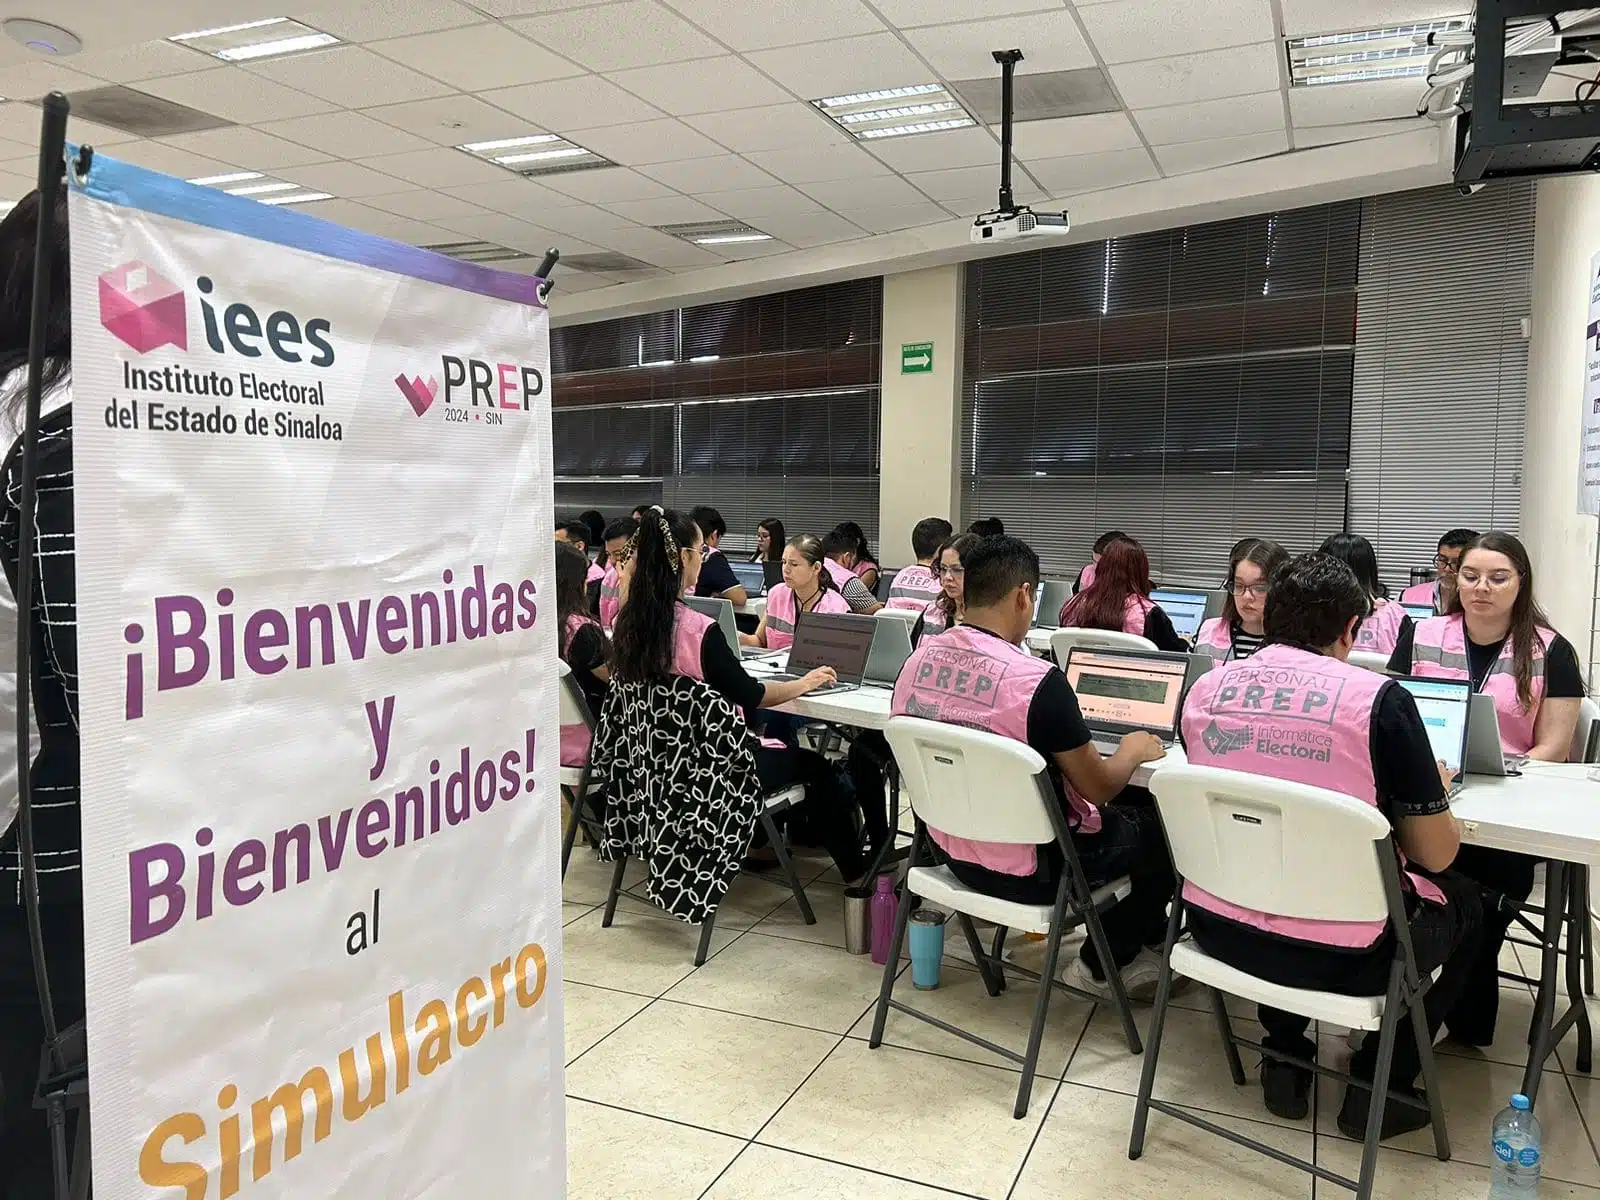 Instituto Electoral del Estado de Sinaloa (IEES)